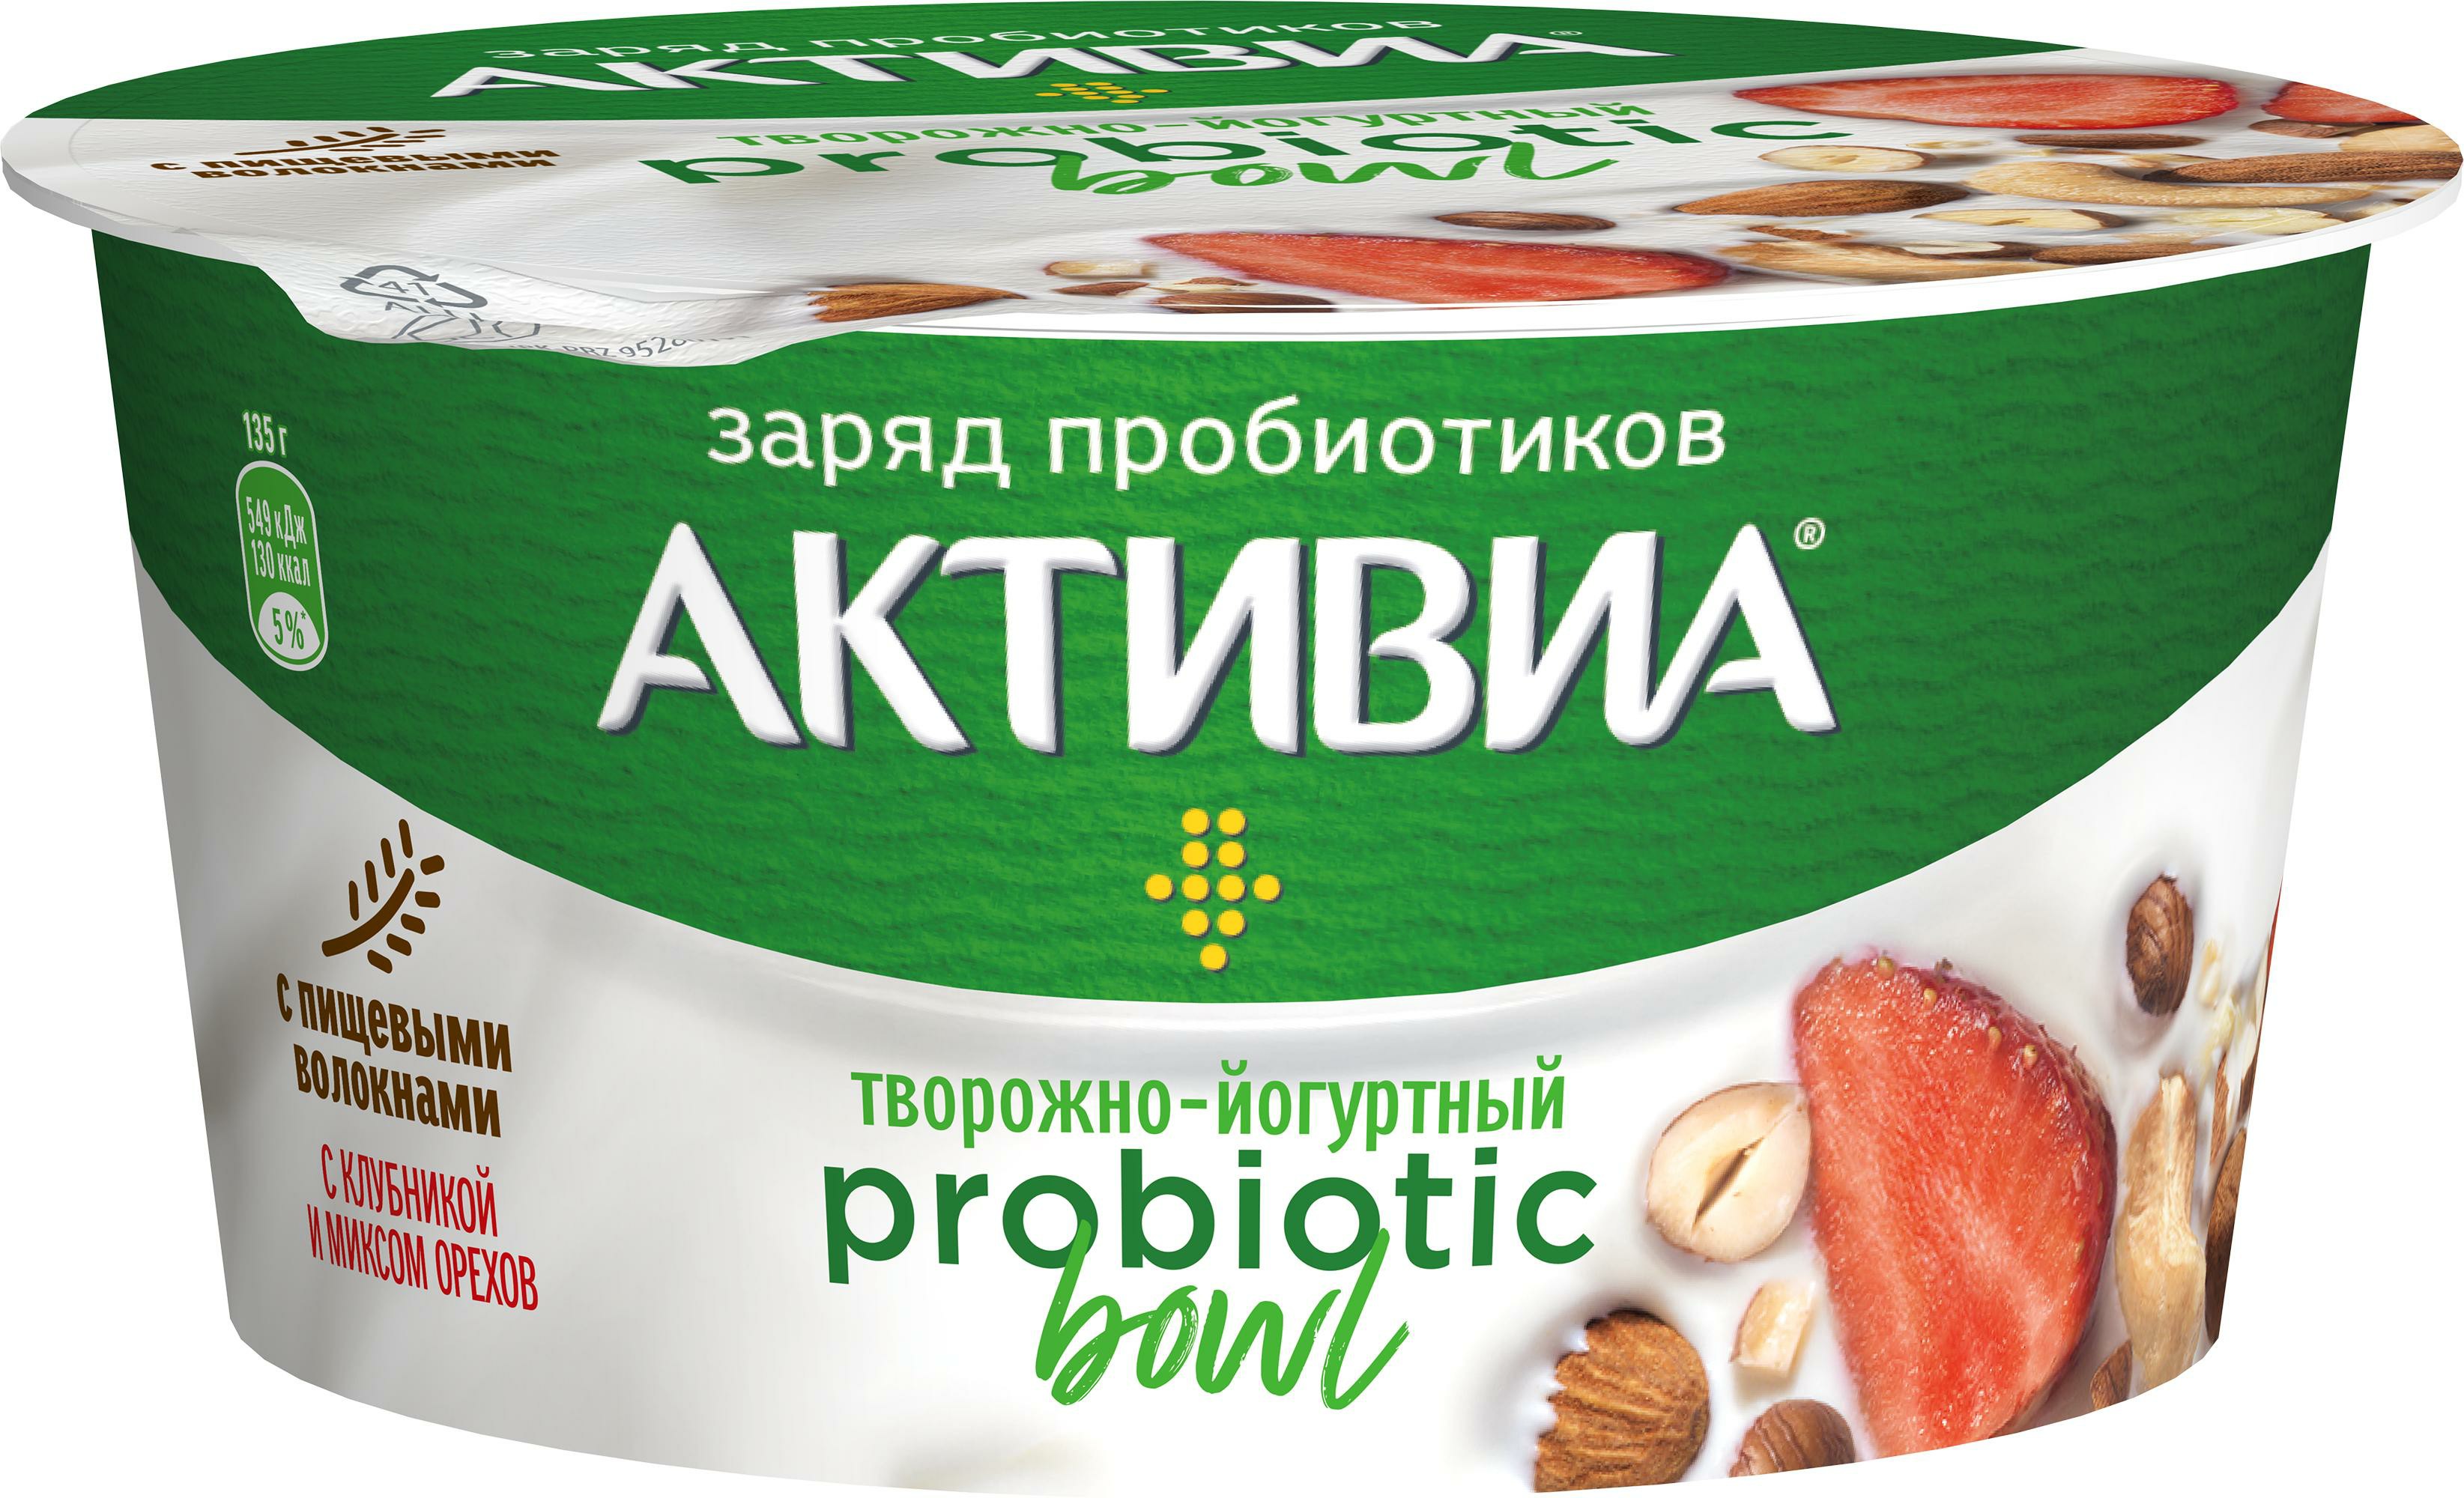 Продукт творожно-йогуртный Активиа Probiotic Bowl с клубникой и миксом орехов 3,5% 135 г